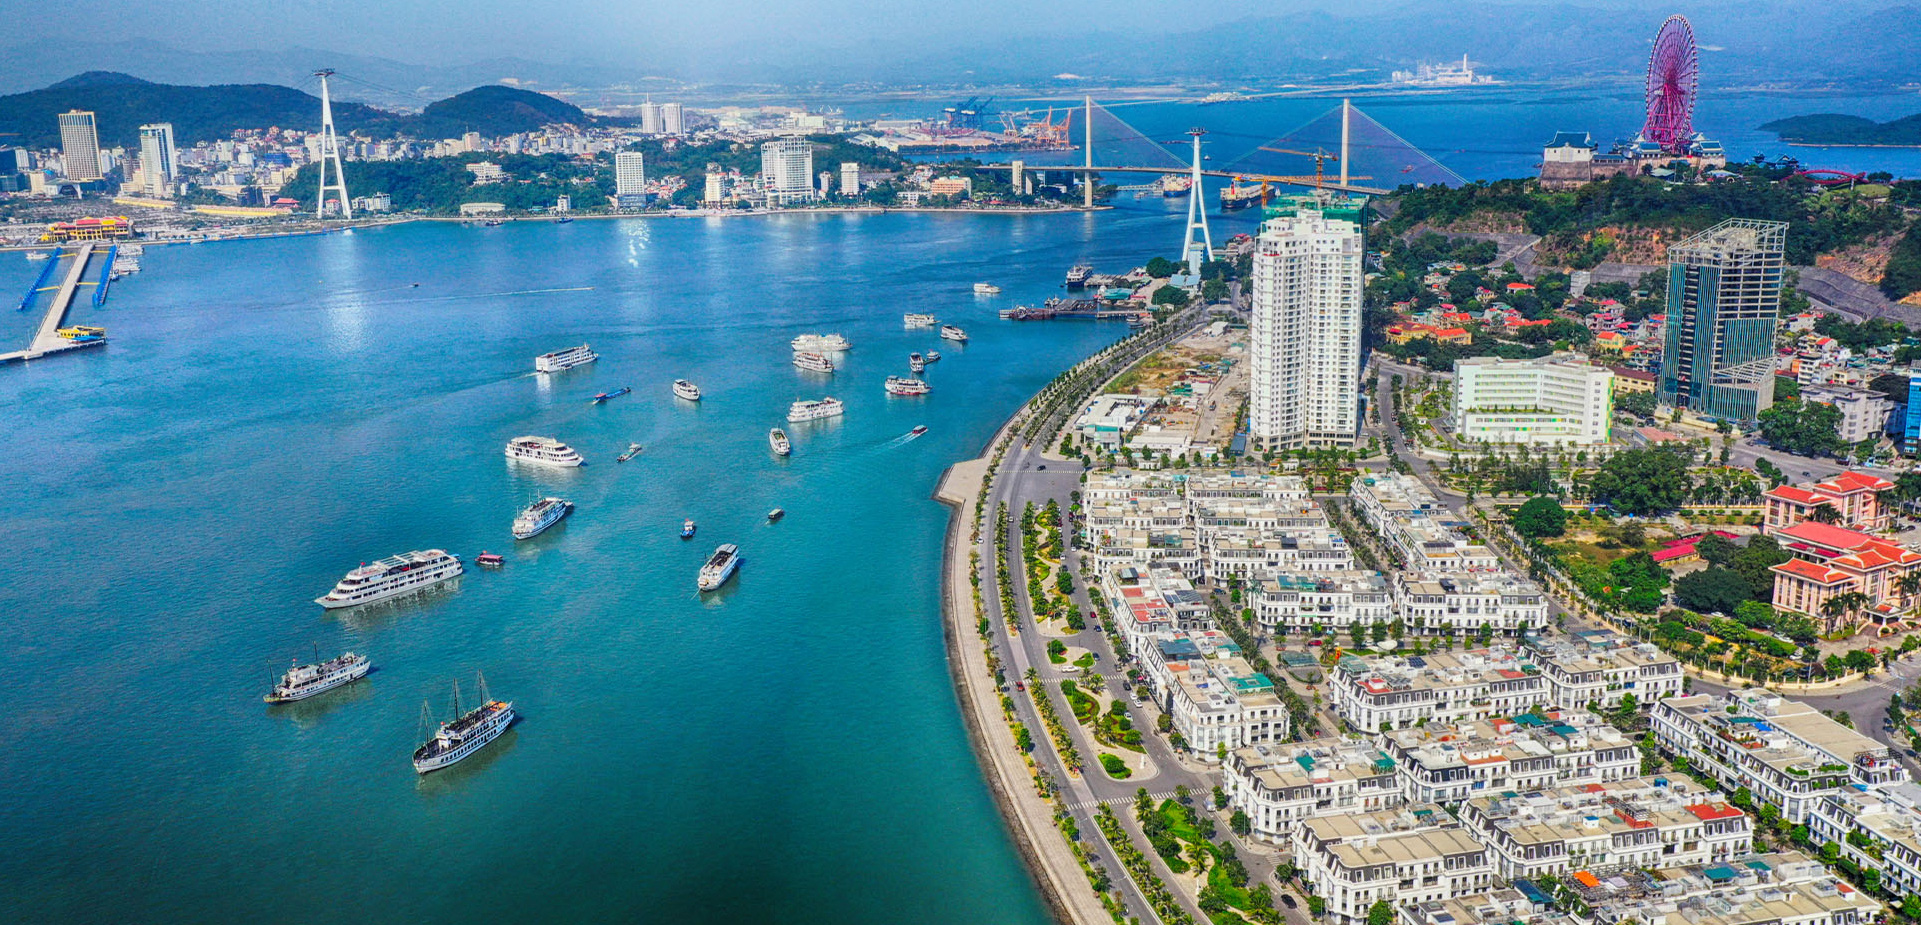 Nhà đầu tư tìm kiếm bất động sản tại cNhà đầu tư tìm kiếm bất động sản tại các thành phố biểnác thành phố biển